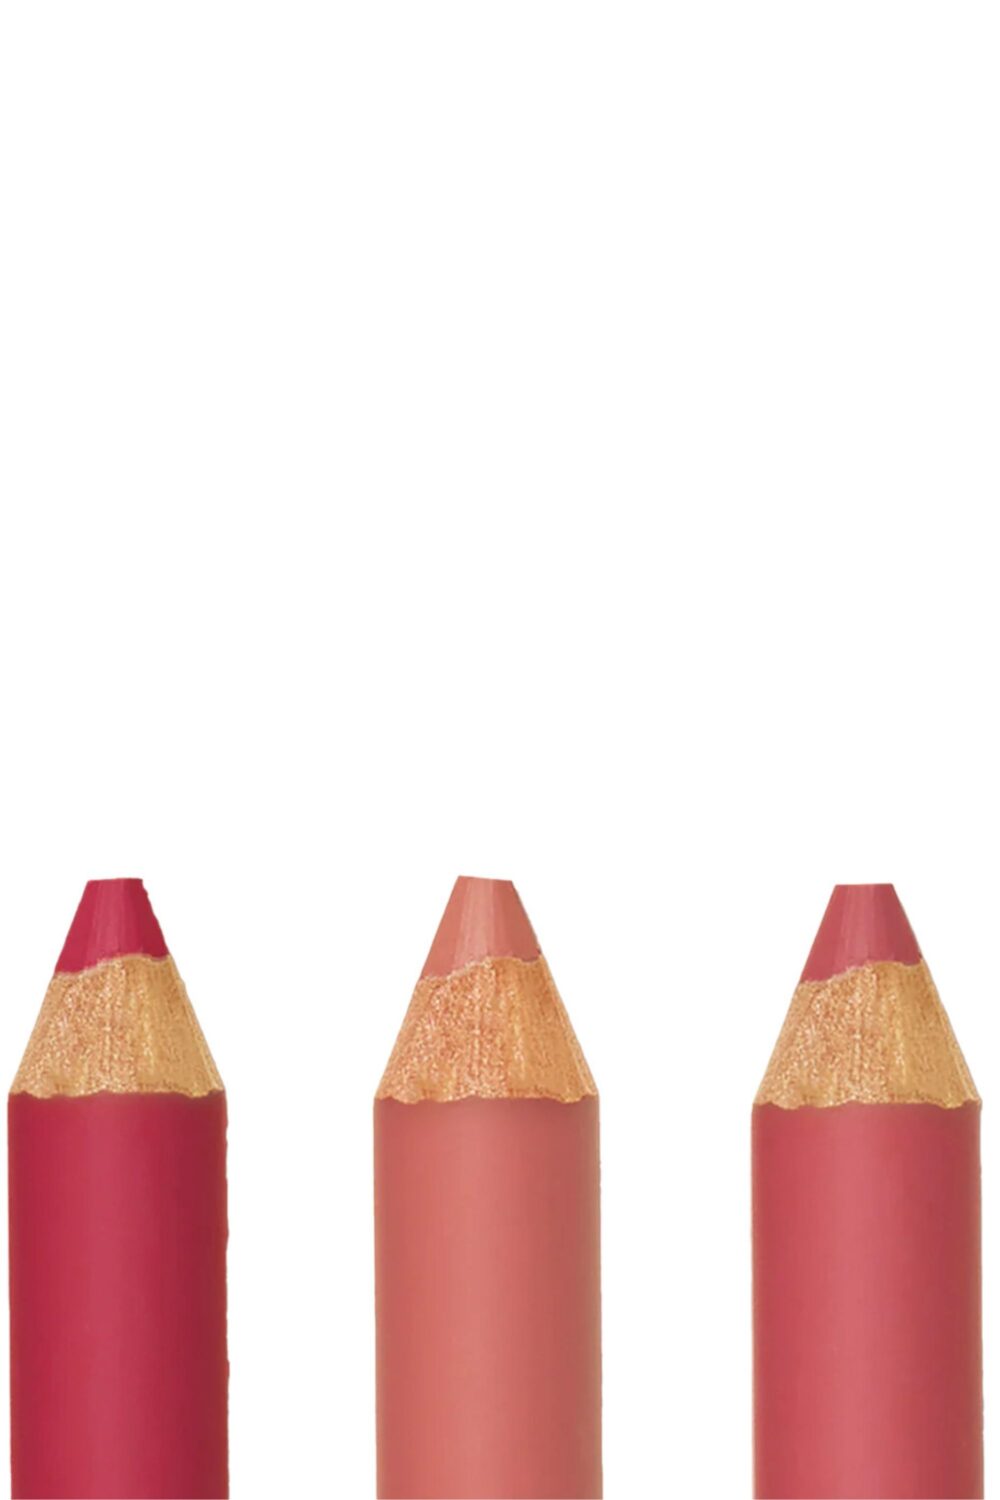 Yolaine - Les crayons à lèvres – Les Roses Un crayon rose